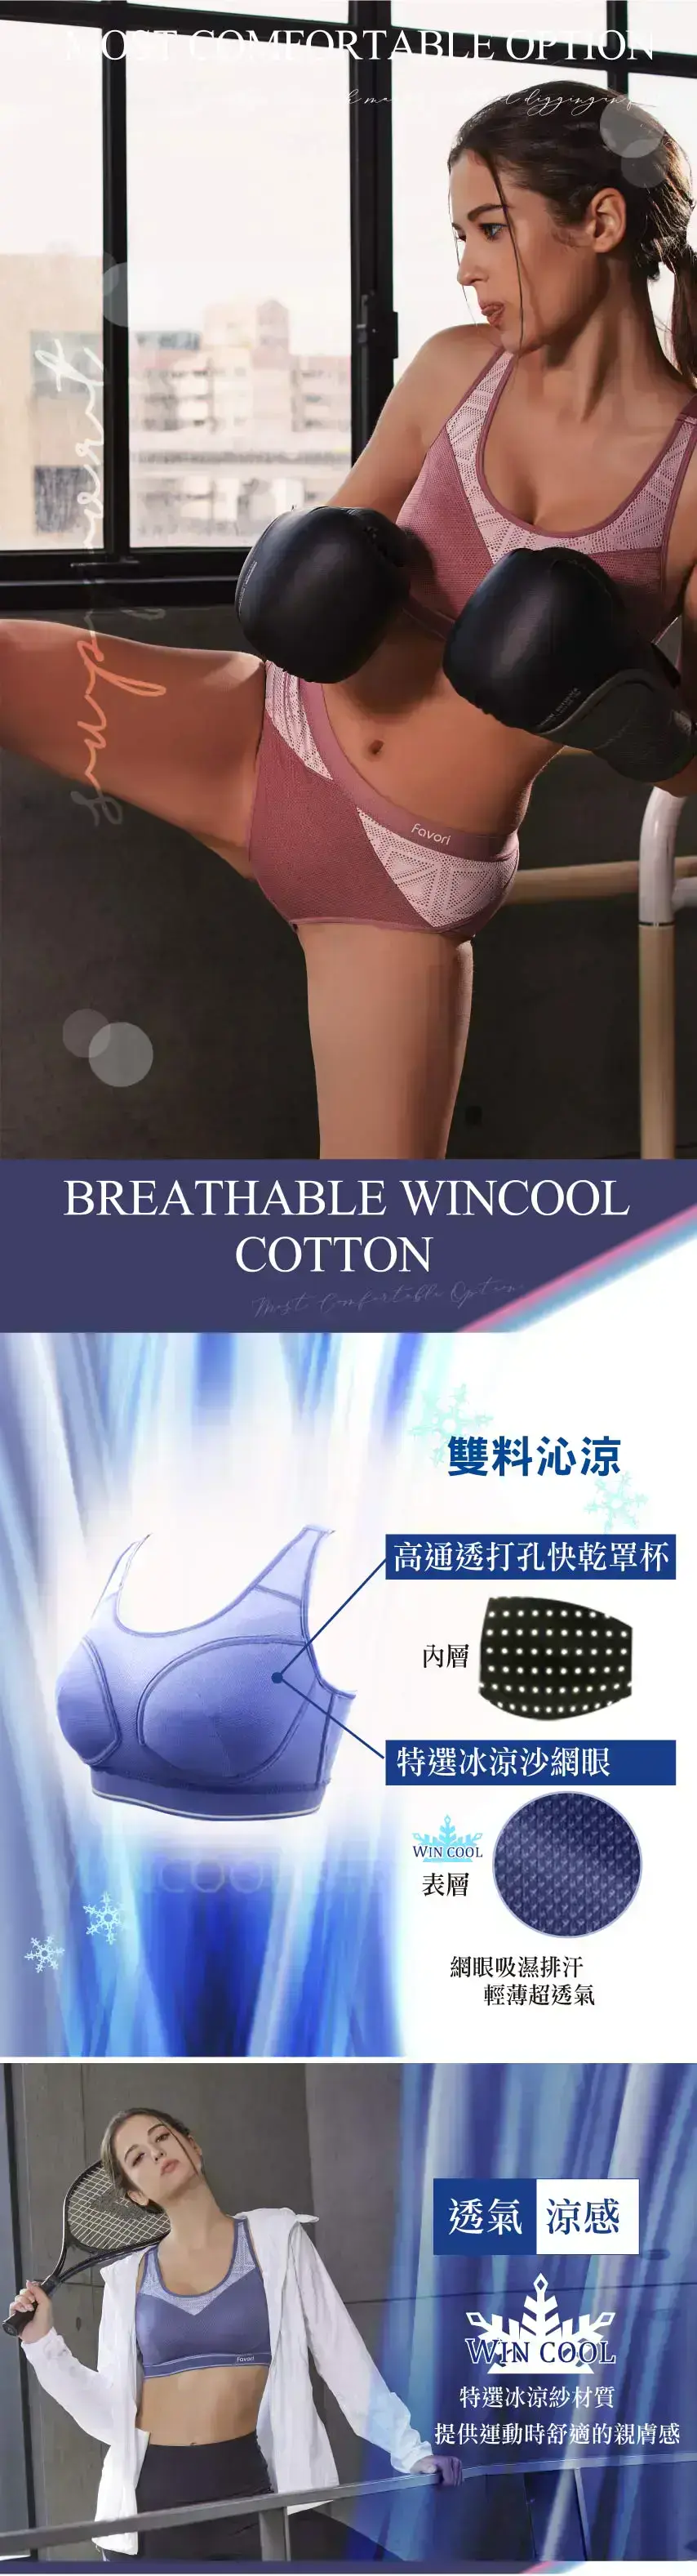 重機能WINCOOL不受拘束罩杯專業運動胸衣(迷霧粉)